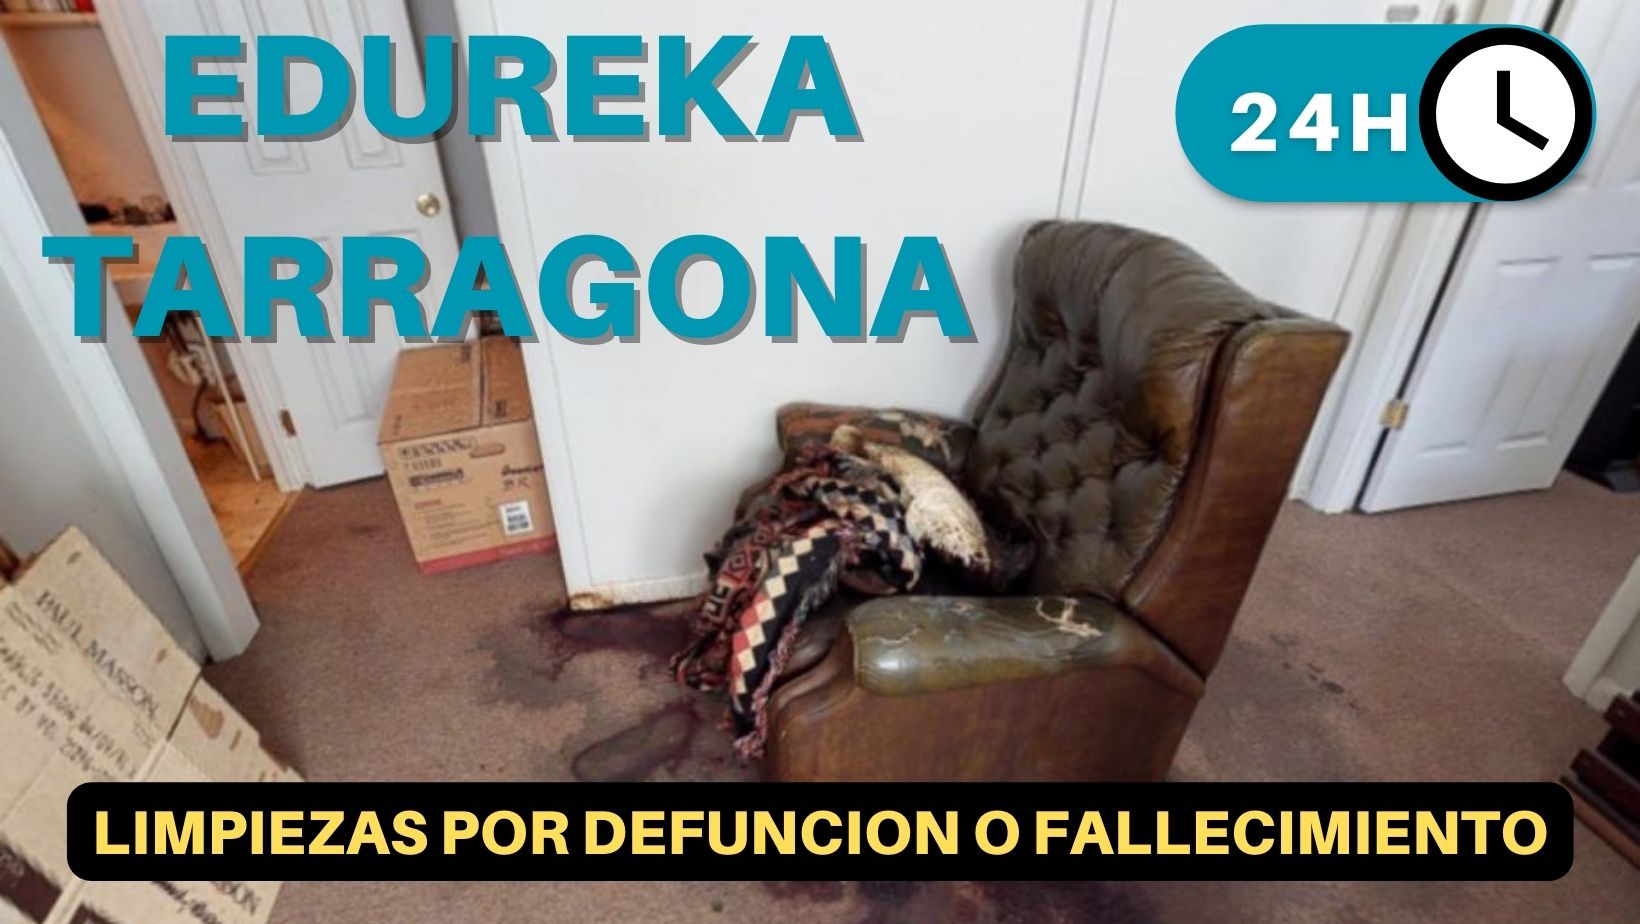 Limpieza y desinfección por defunción o fallecimiento en Vilanova d'Escornalbou